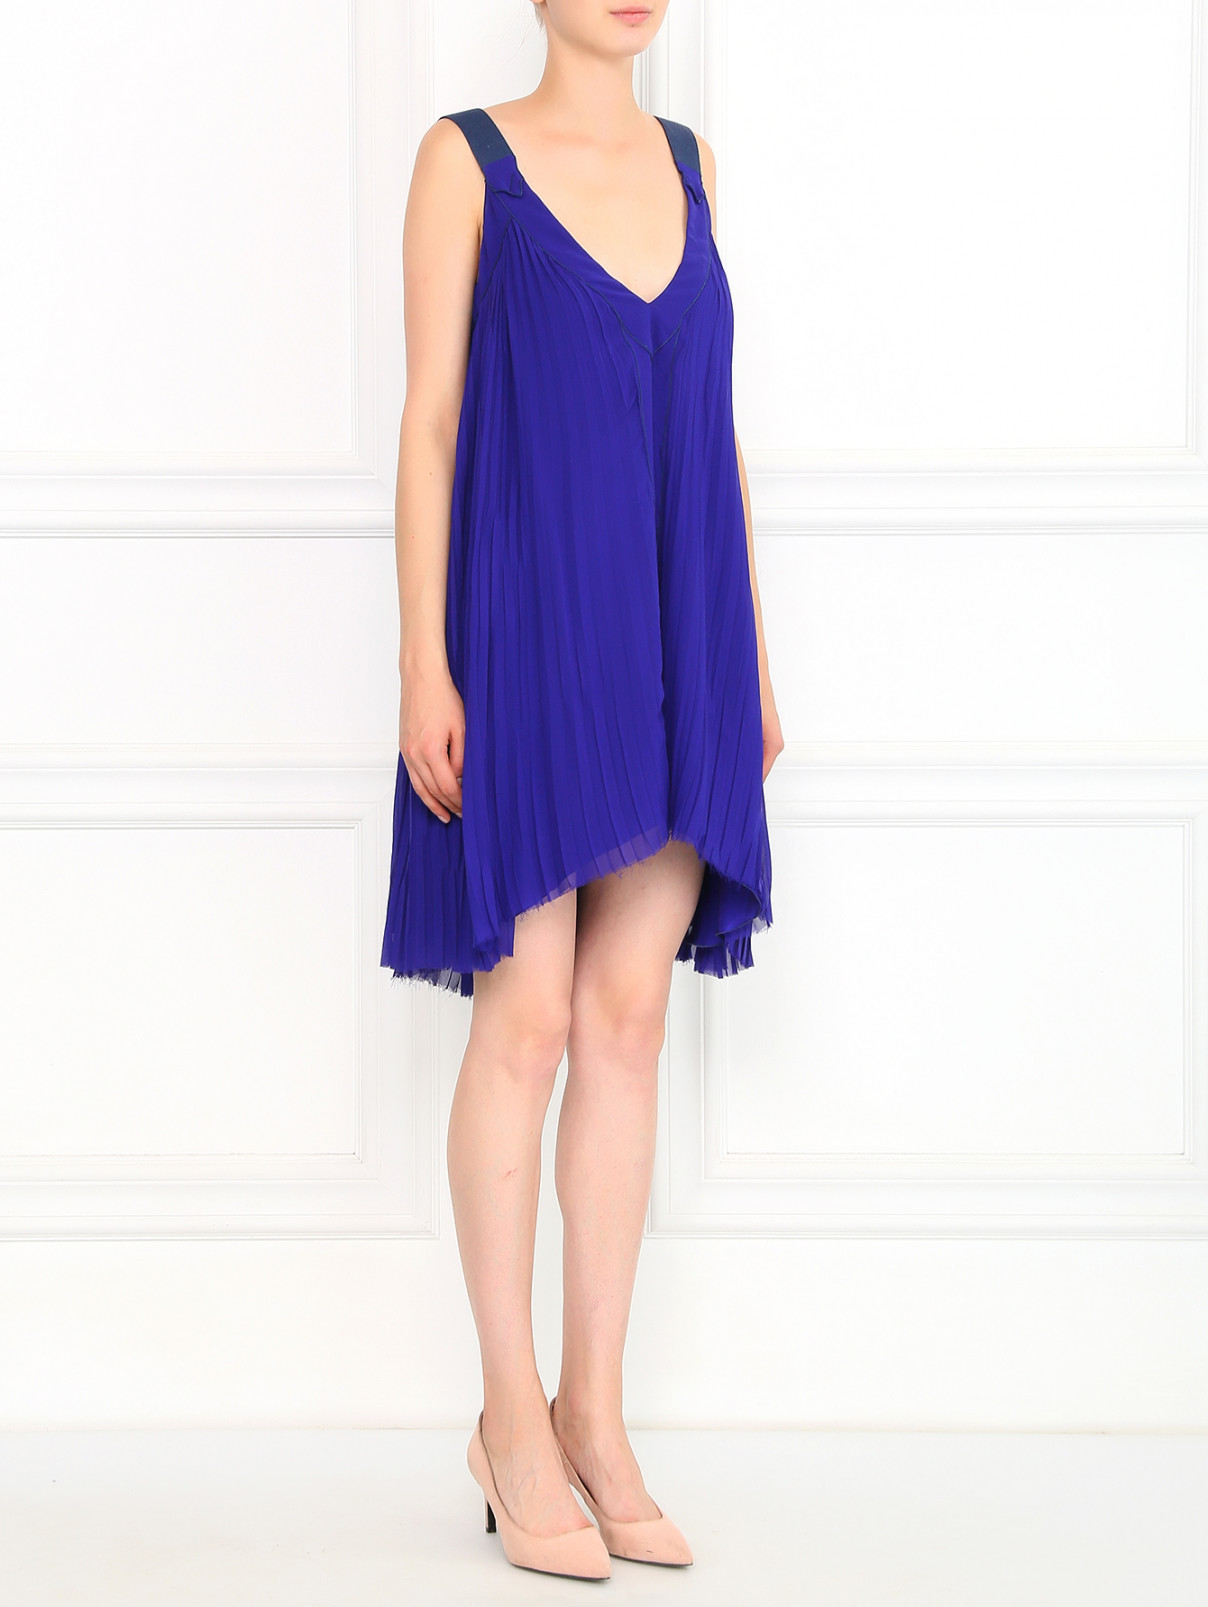 Платье из шелка свободного кроя Costume National  –  Модель Общий вид  – Цвет:  Фиолетовый